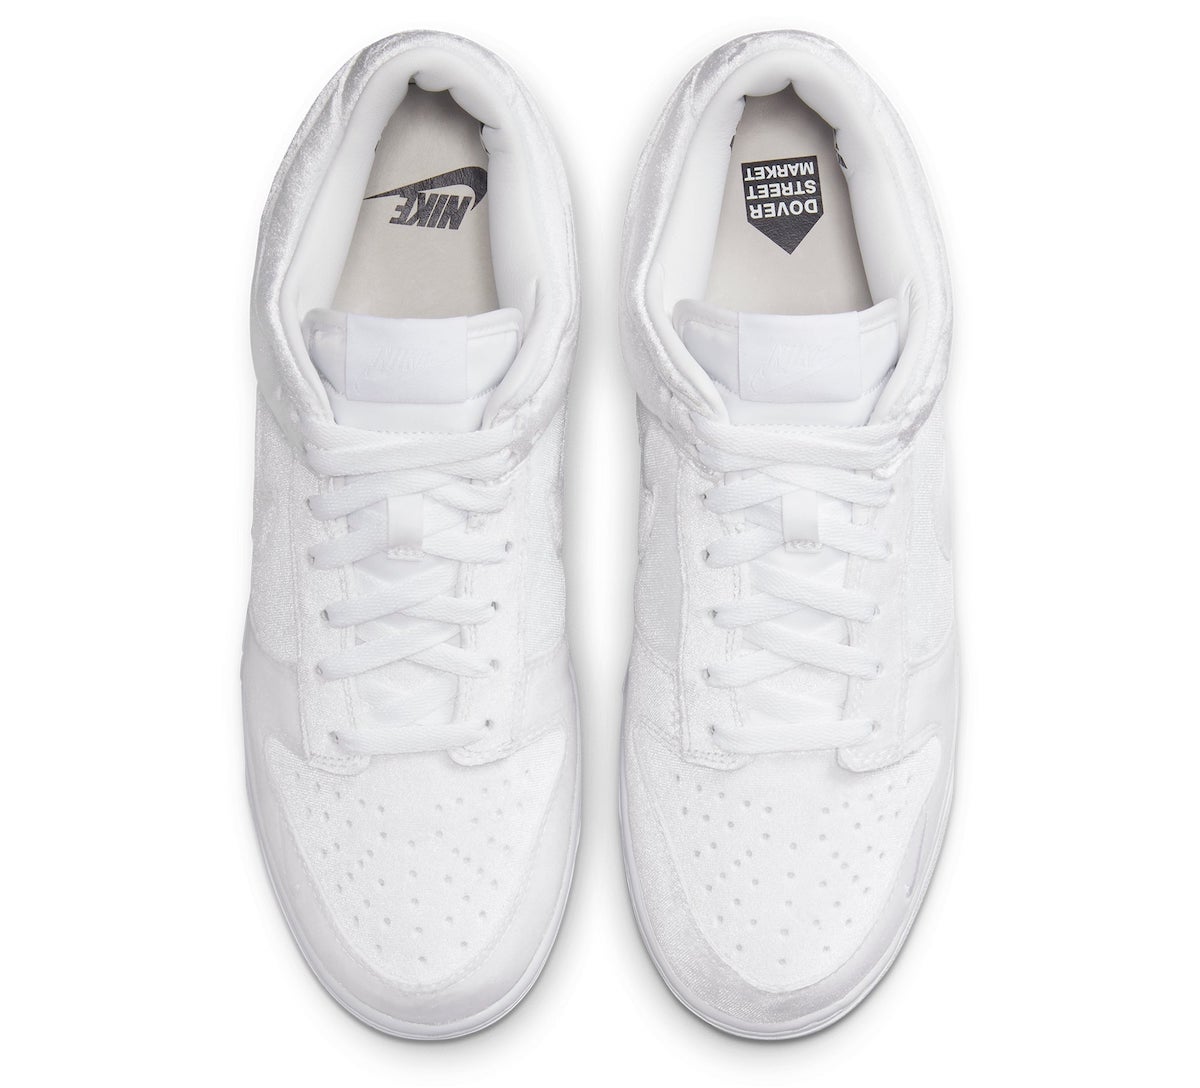 Dover Street Market DSM Nike Dunk Low Velvet White DH2686-100 Release Date